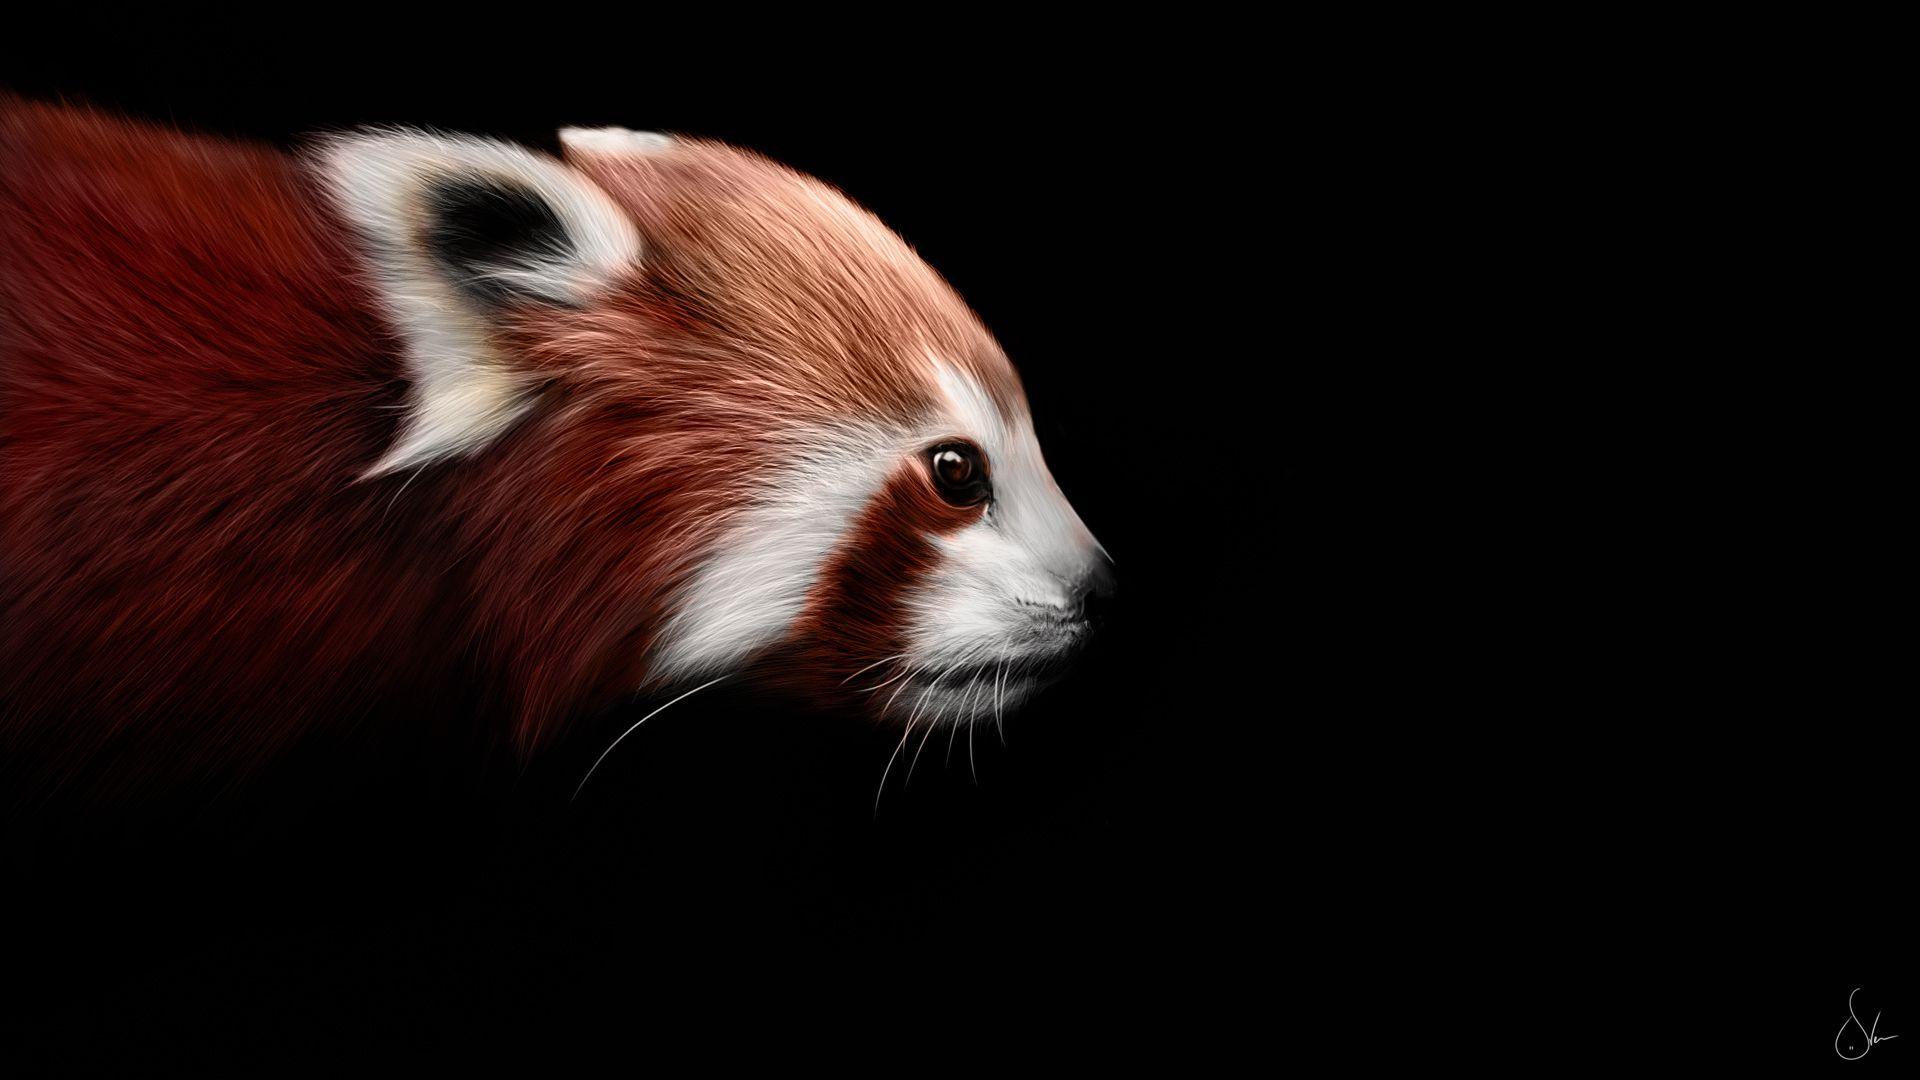 Red panda wallpaper Animal wallpaper. Wallpaper For Desktop